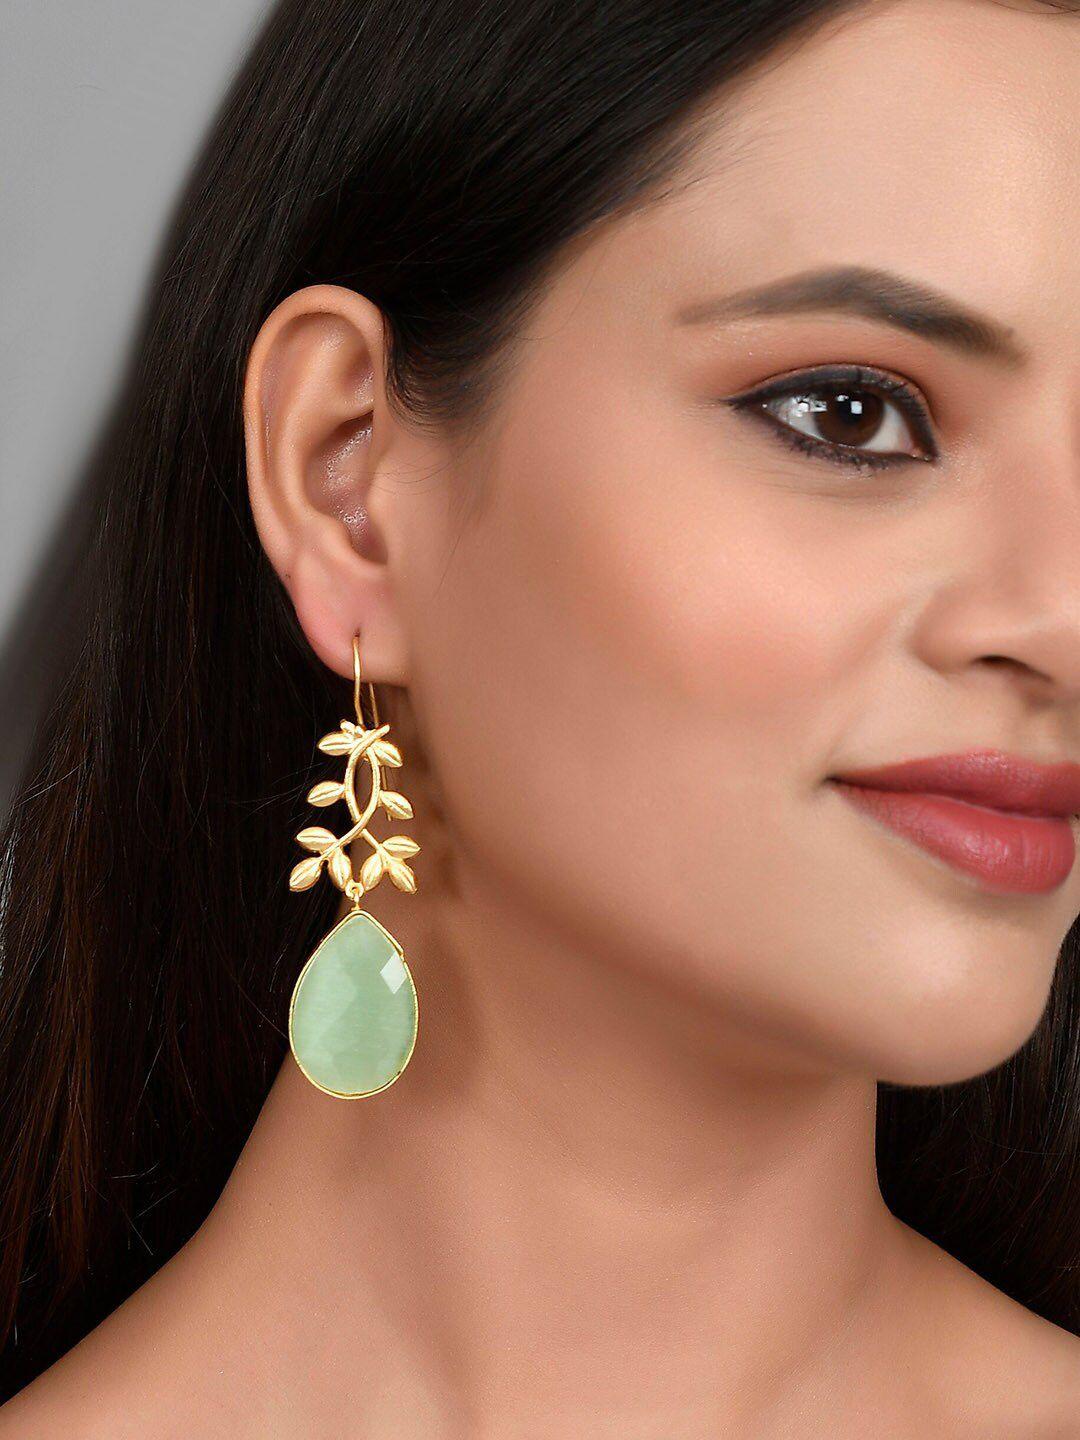 silvermerc designs gold-toned teardrop shaped drop earrings